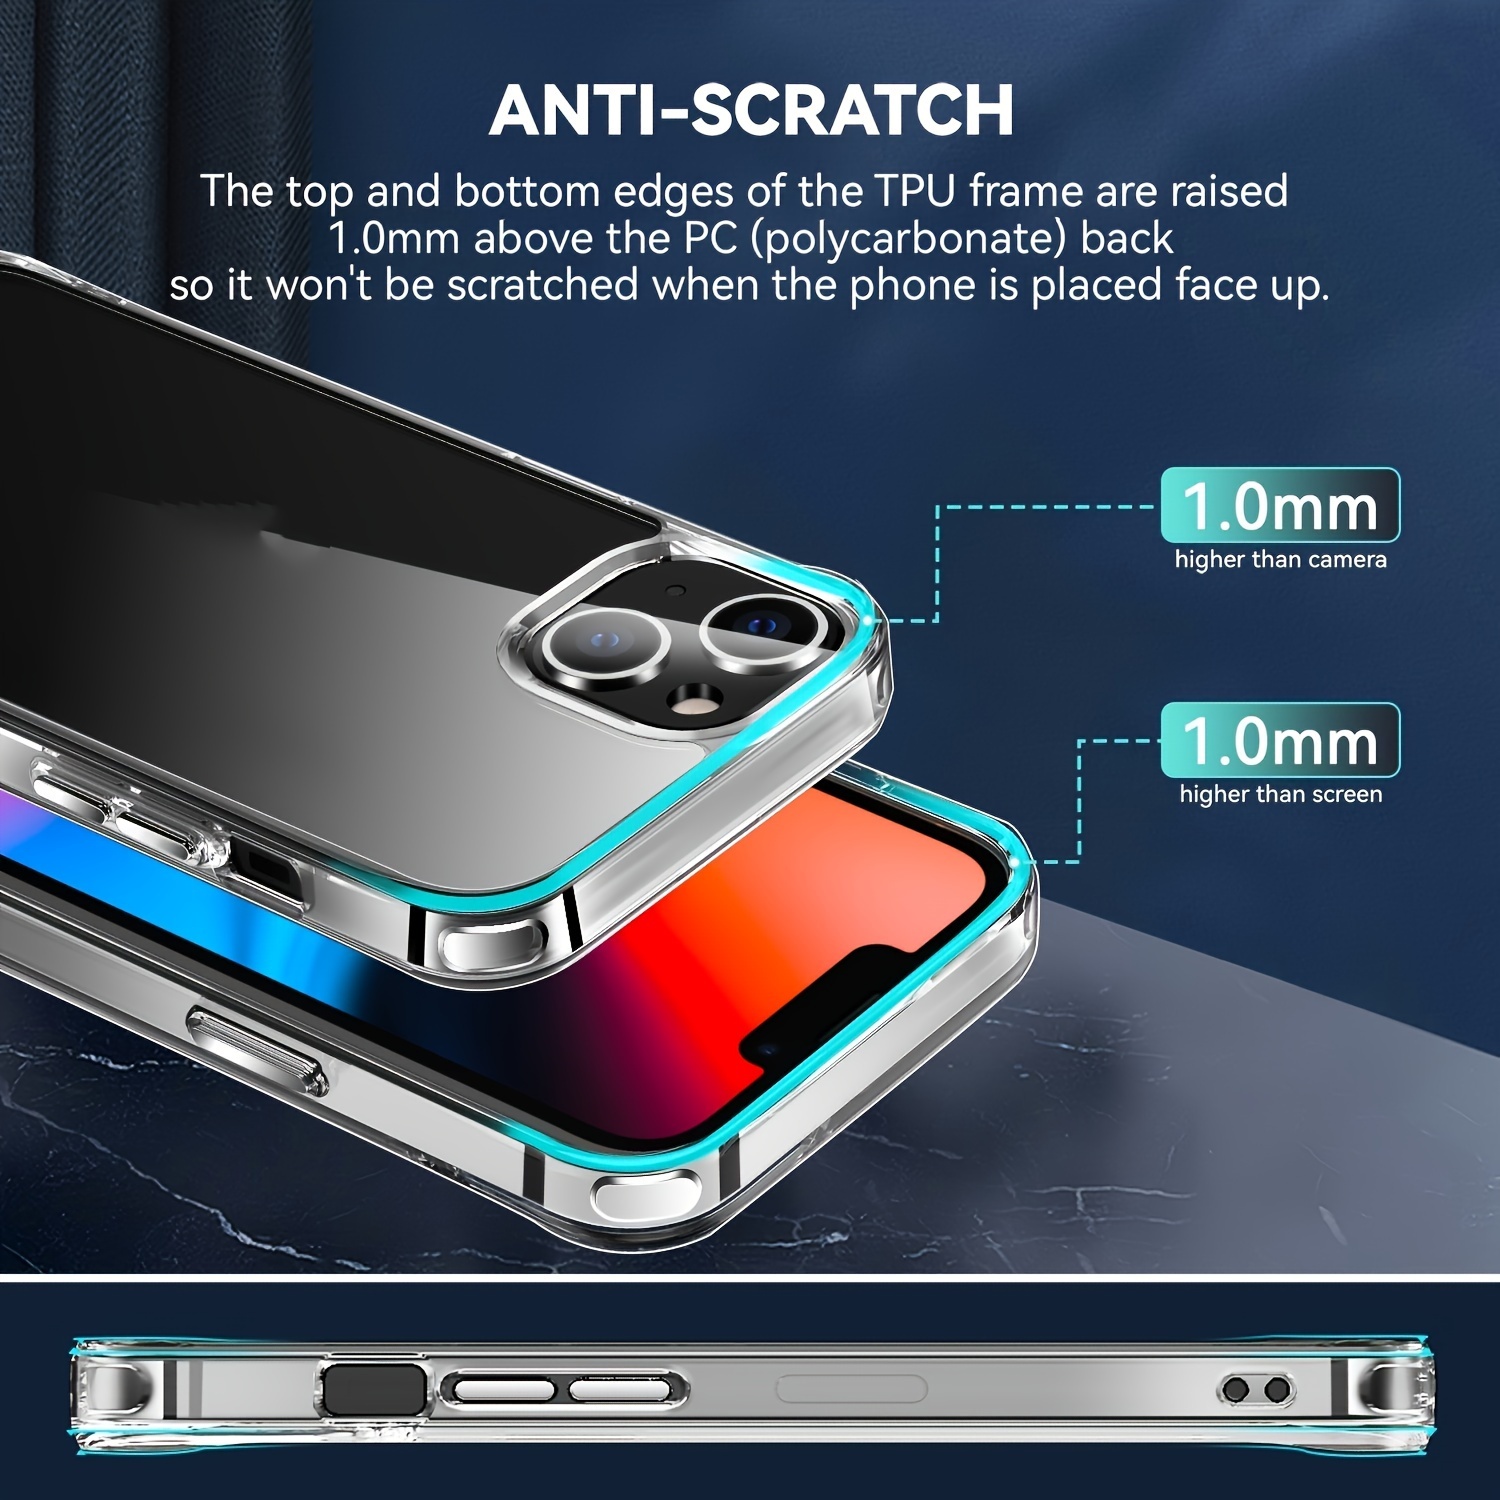 Carcasa para iPhone XR, Transparente de 6.1 Pulgadas TPU Crystal Clear